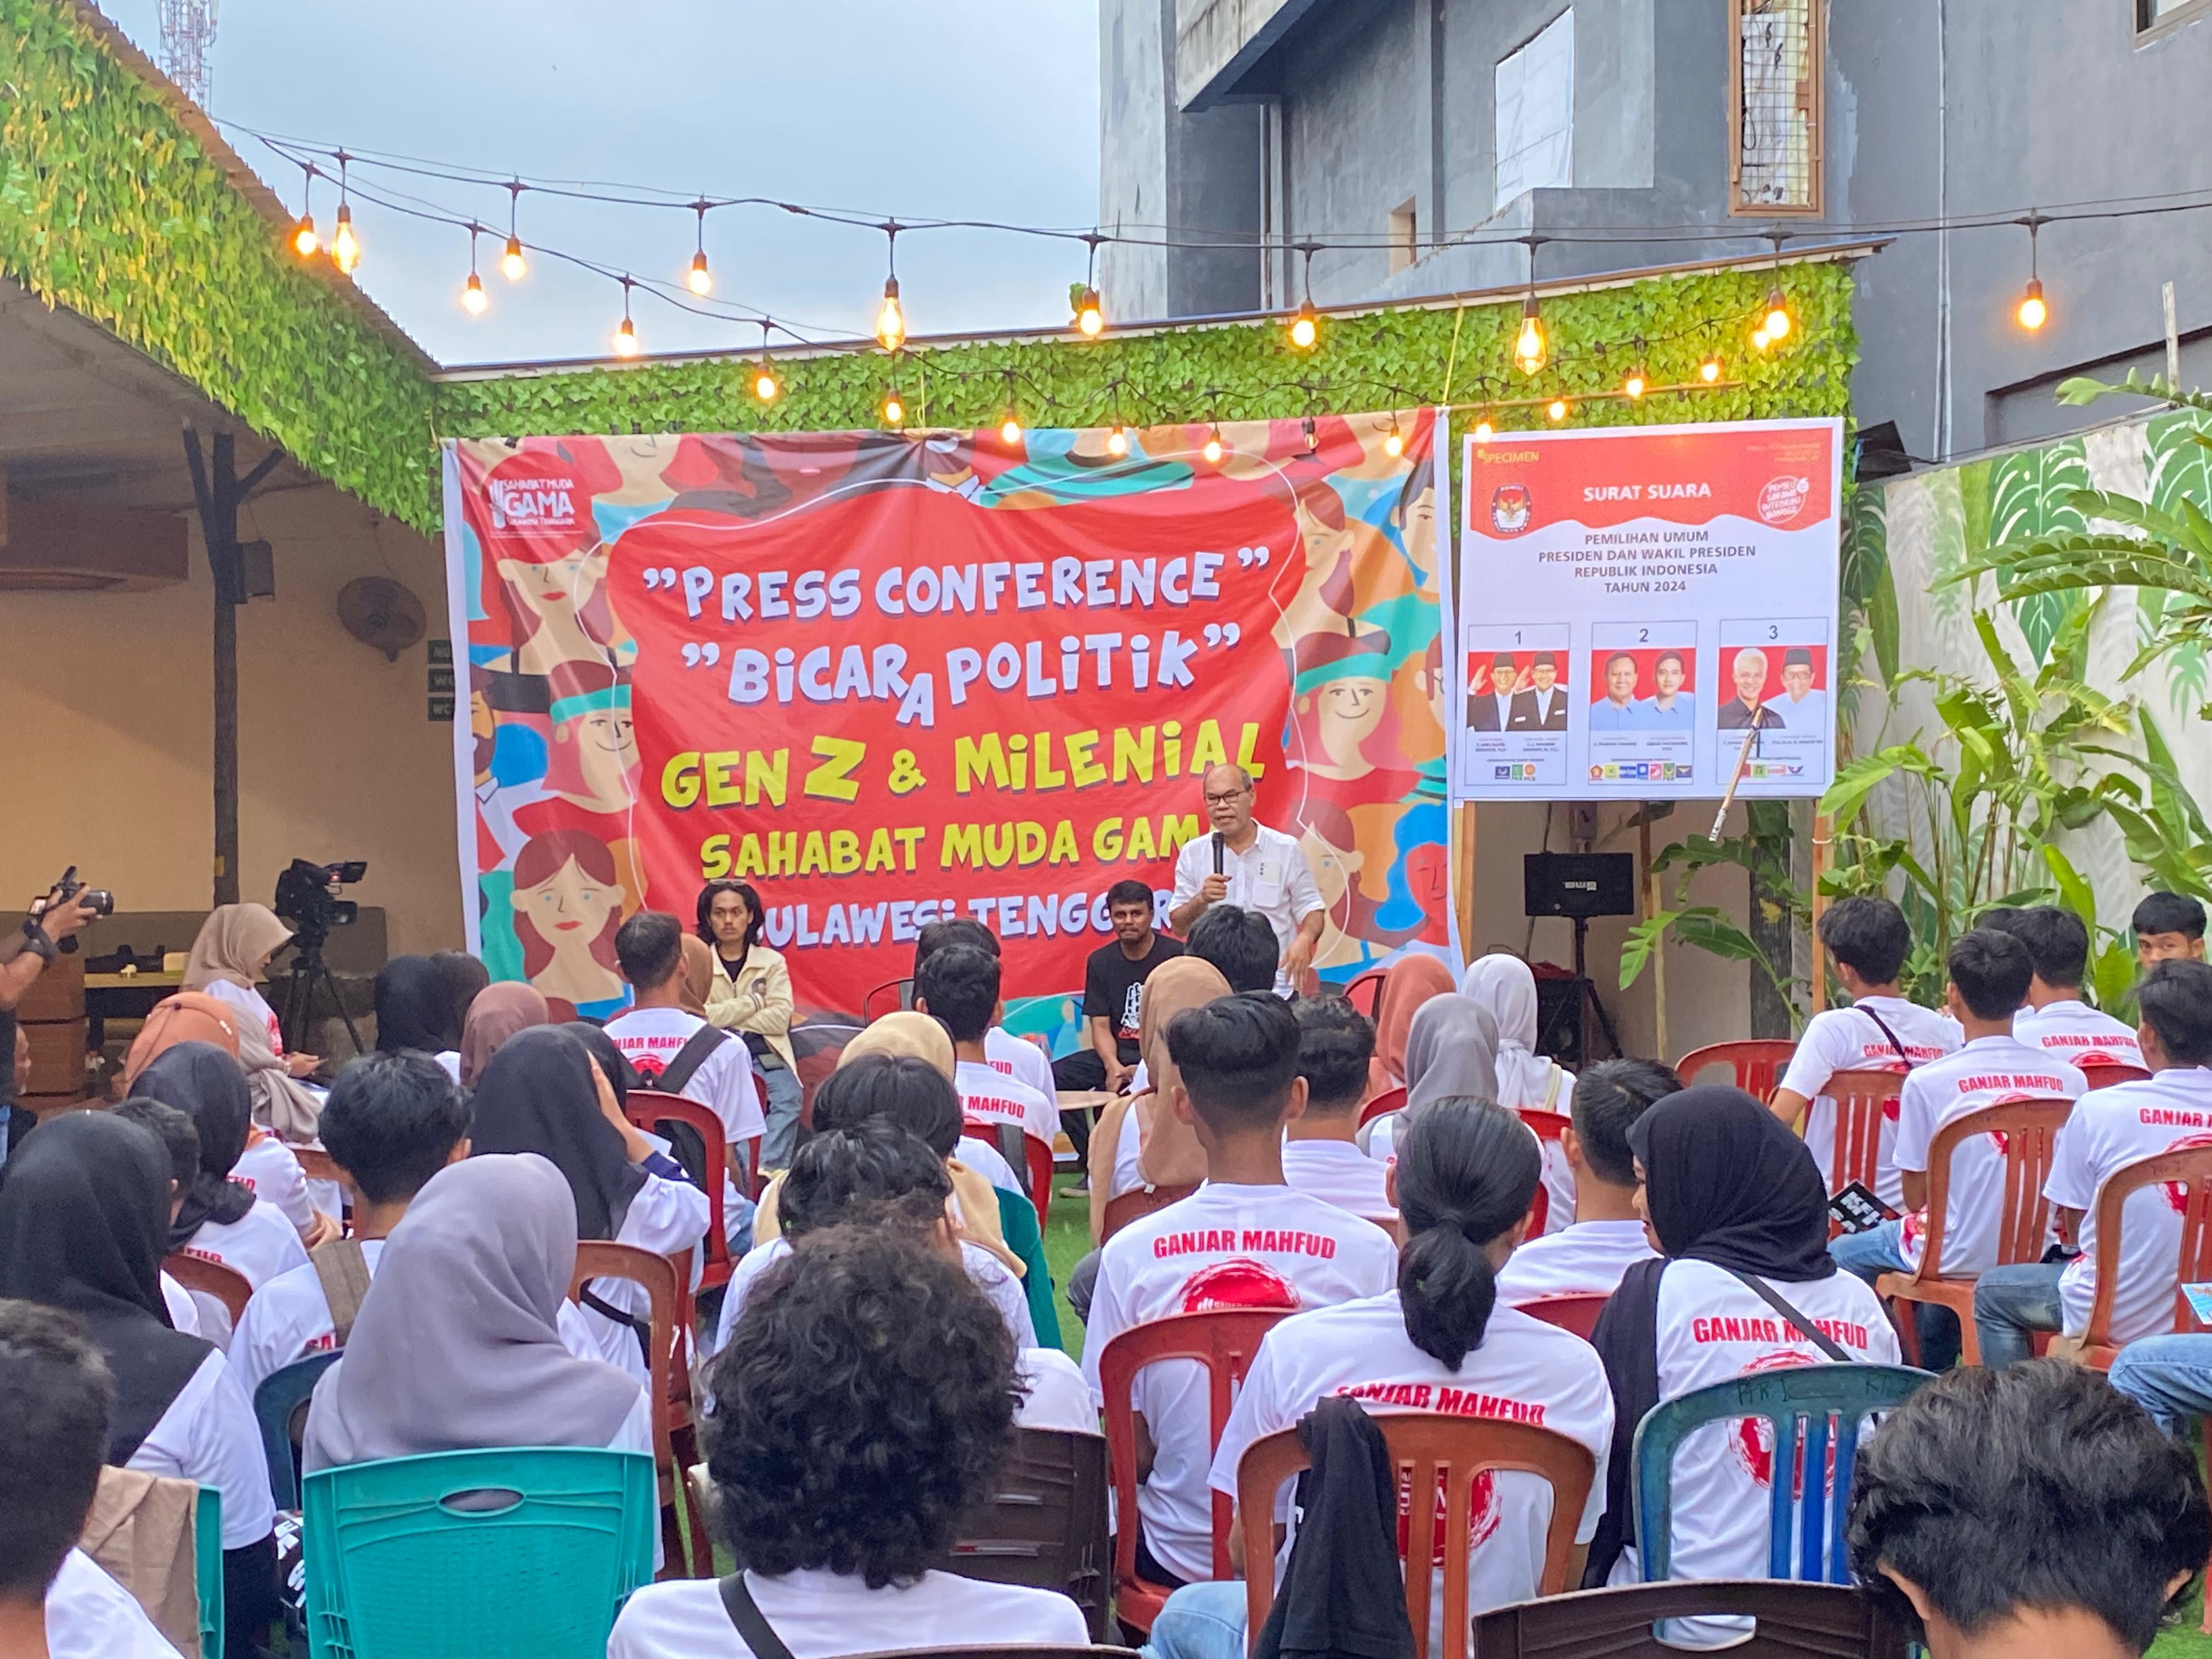 Sahabat Muda GAMA Sulawesi Tenggara menggaungkan milenial dan Gen Z melek politik melalui kegiatan Bincang Politik. 